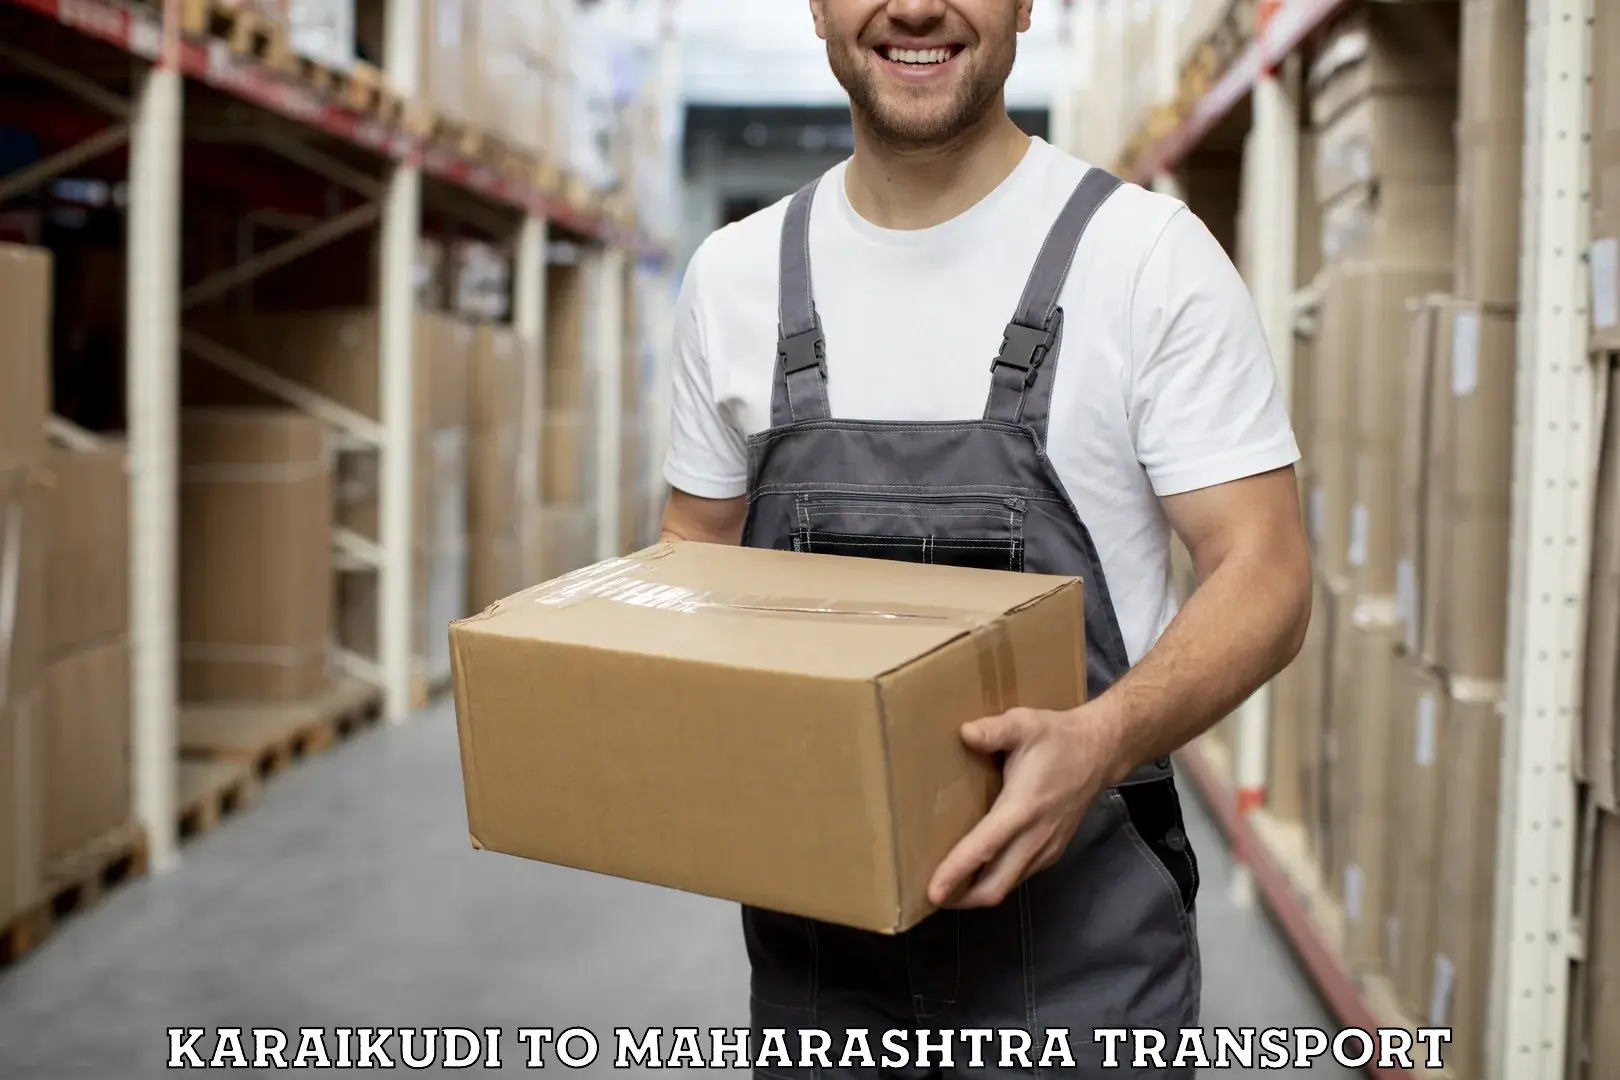 Cargo transport services Karaikudi to IIIT Nagpur